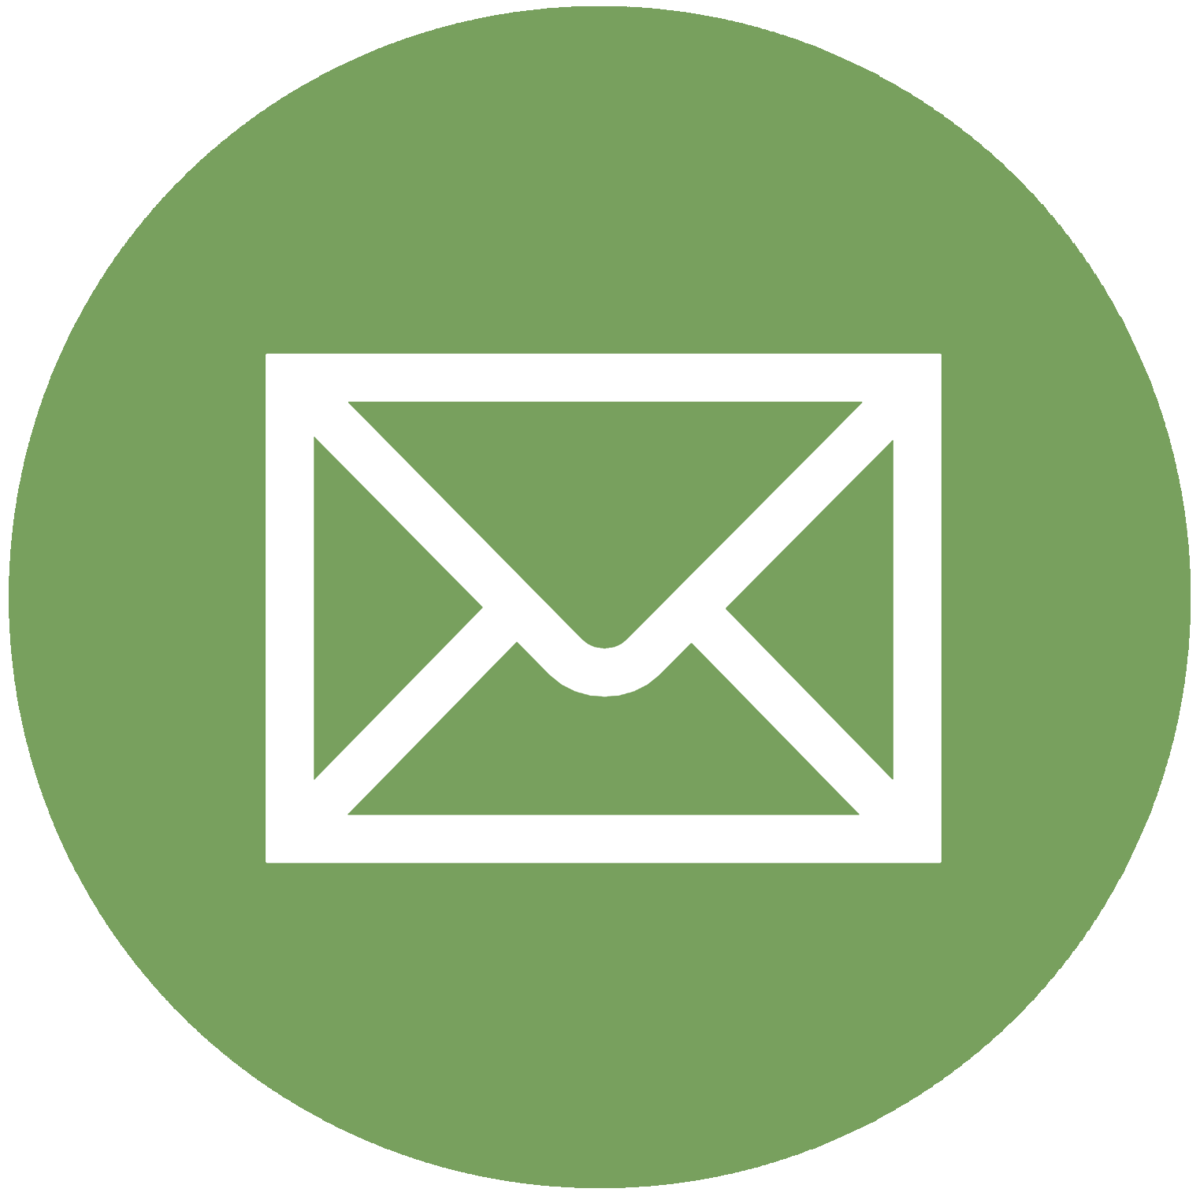 Envlope Logo - Download Icons Symbol Envelope Computer Mail Logo Email HQ PNG Image ...